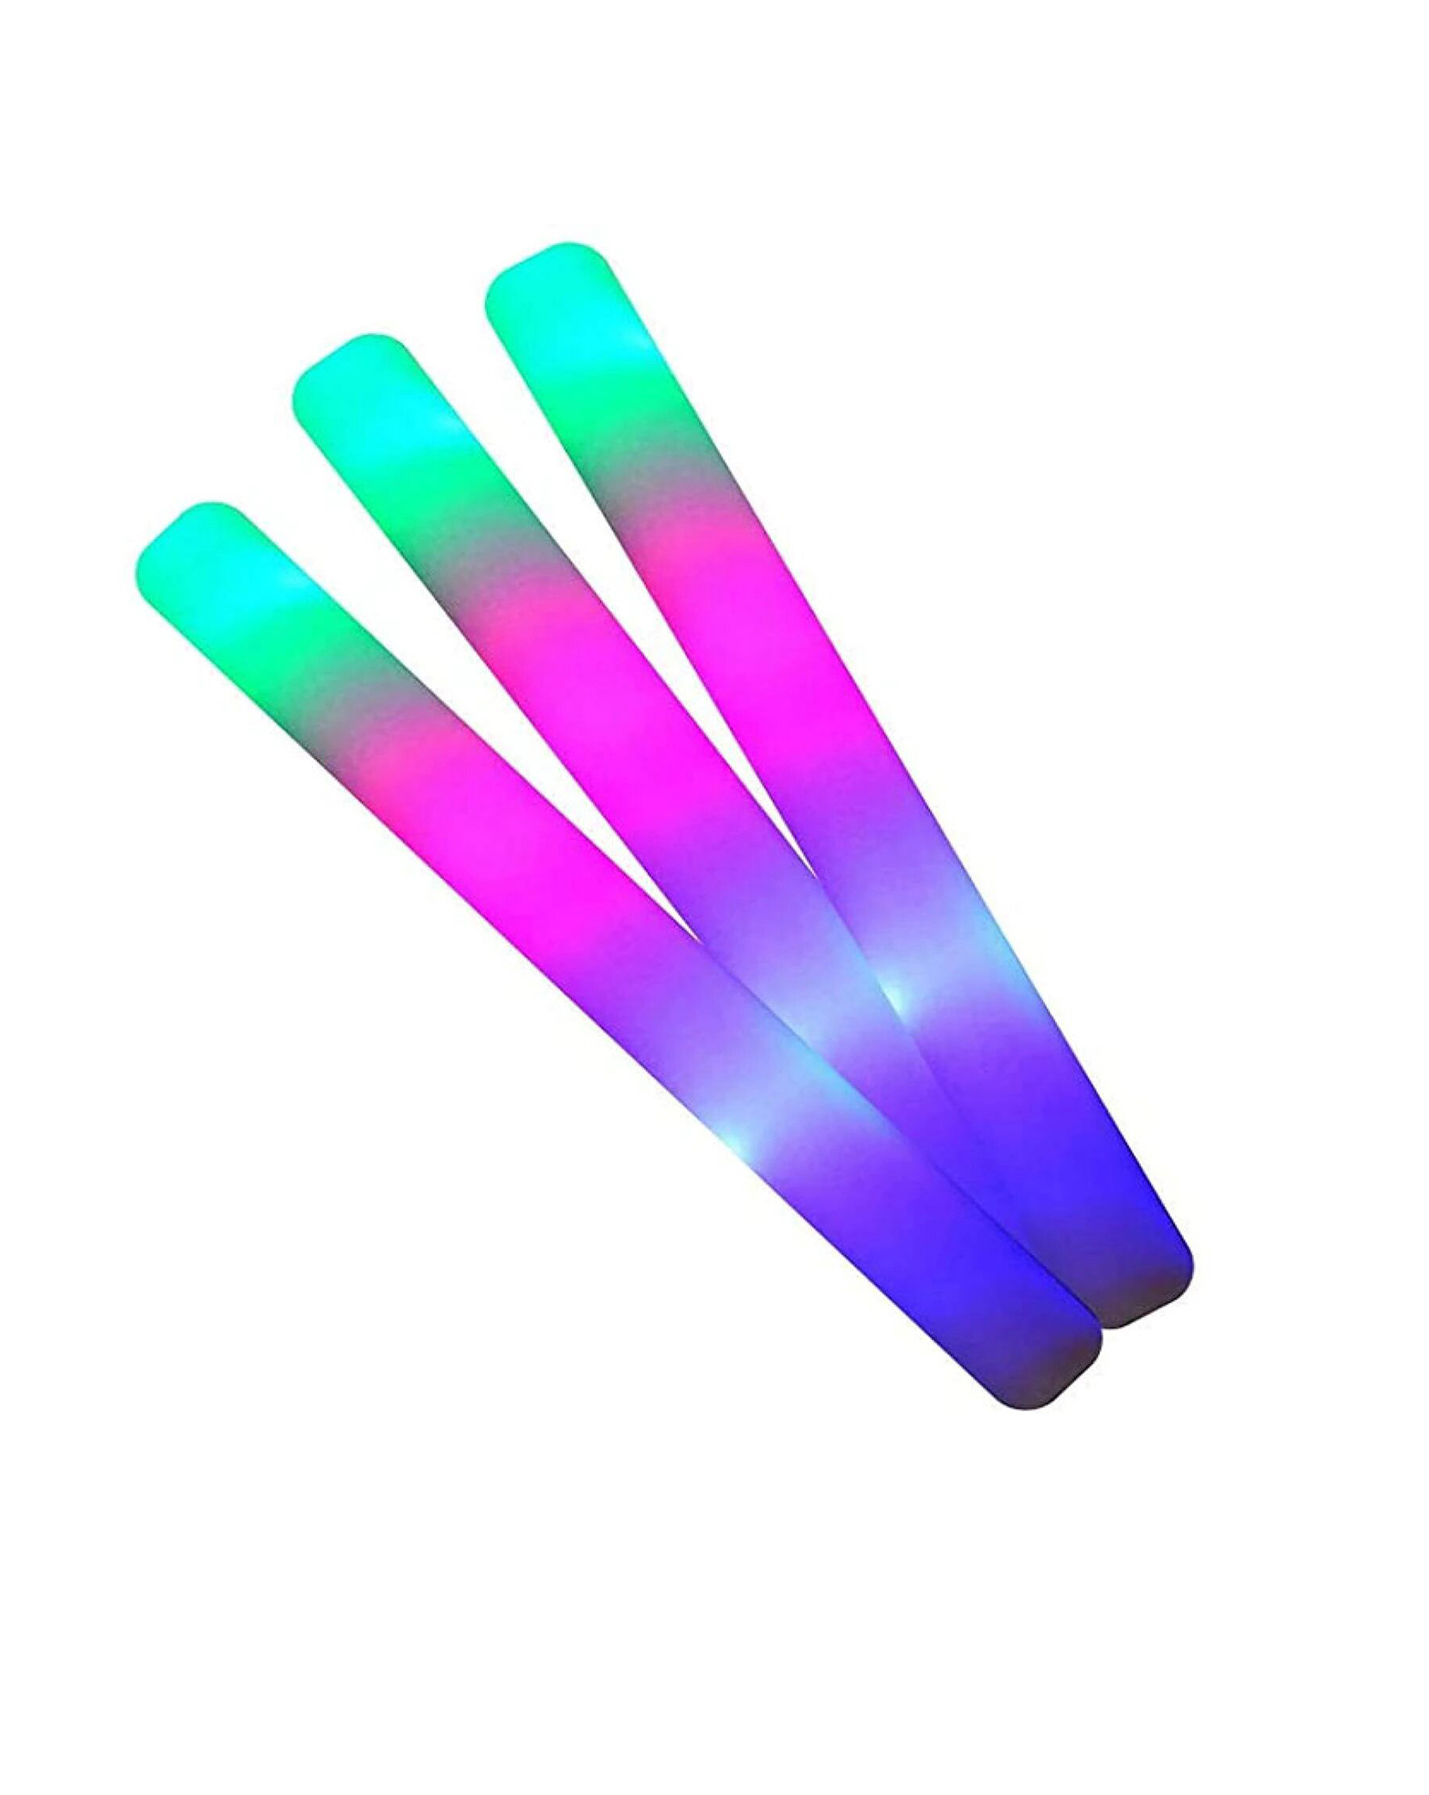 Juego de 24 palos de espuma con luz LED multicolor que cambia de color, 3  modos intermitentes, 16.0 in, varita suave